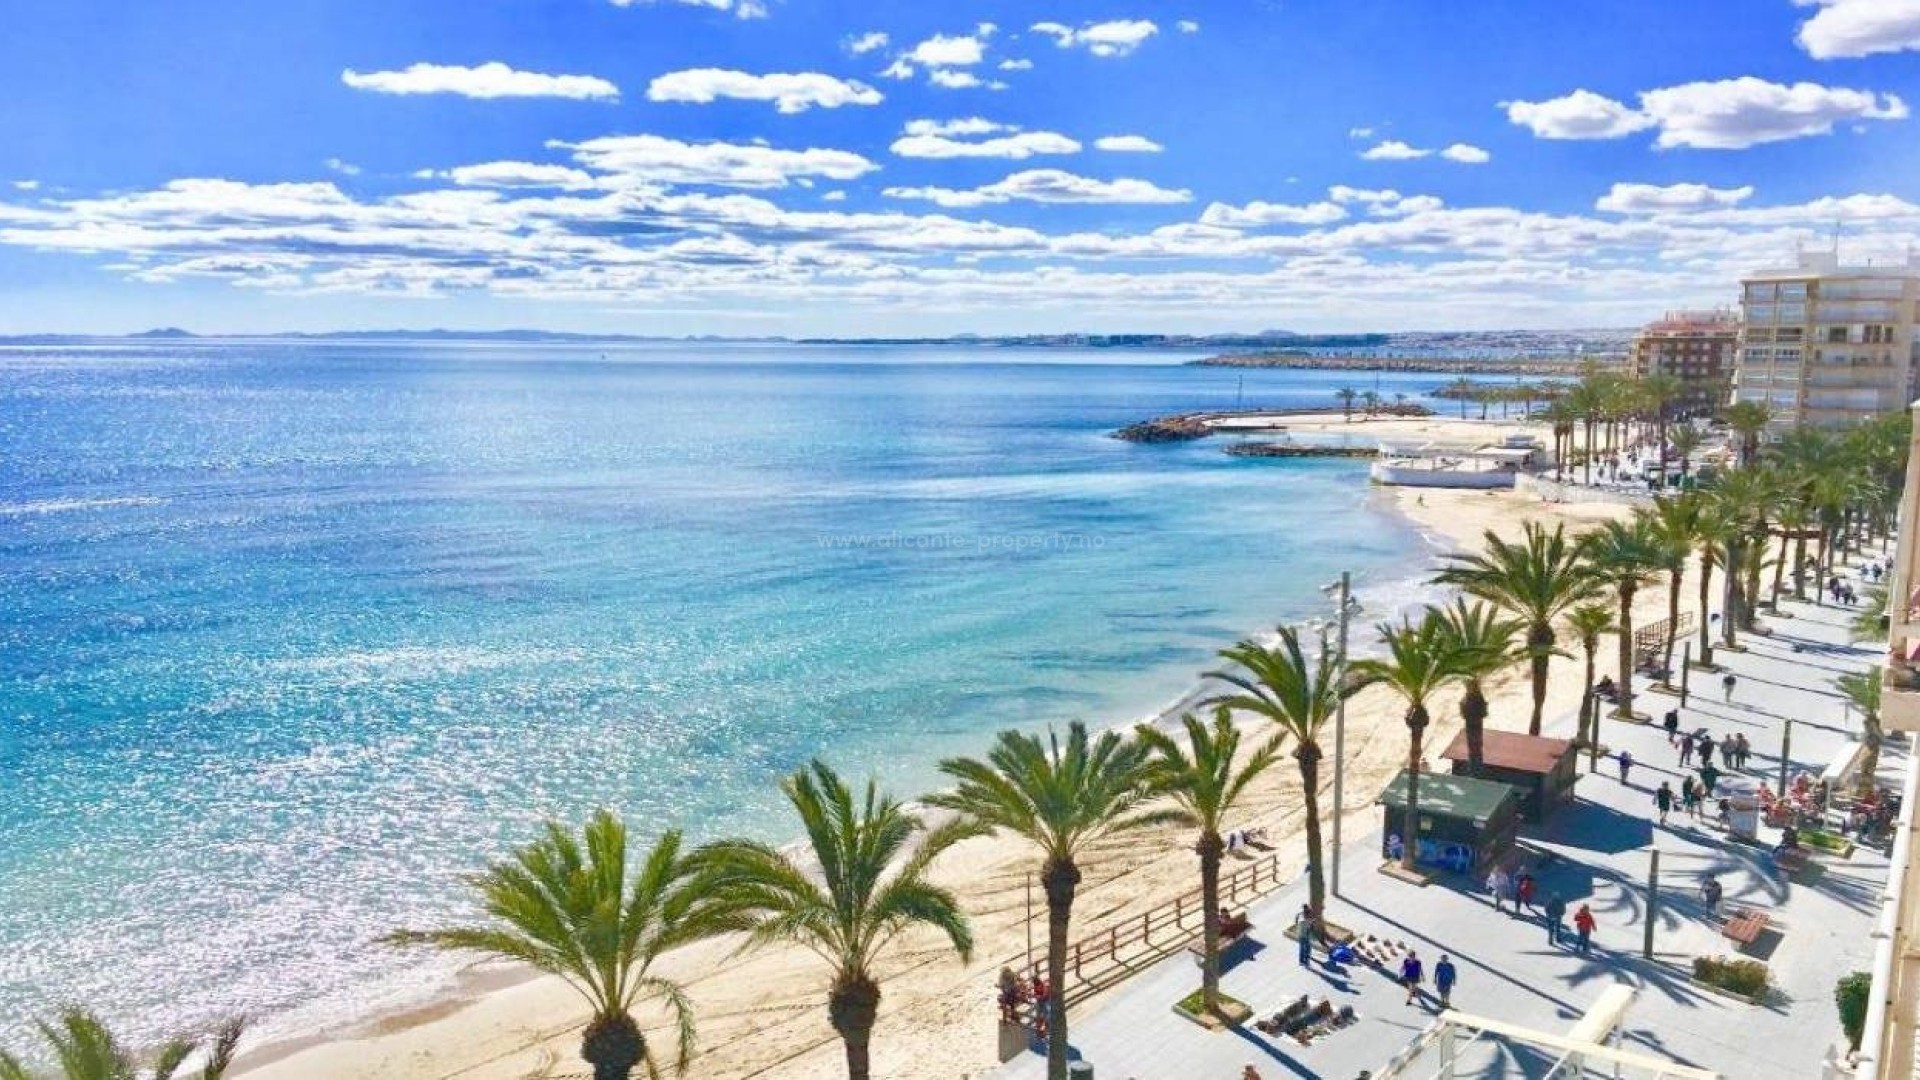 Leiligheter 200 meter fra stranden Playe del Cura i Torrevieja, Alicante, 2 soverom, 2 bad, felles svømmebasseng med badstue og felles solarium